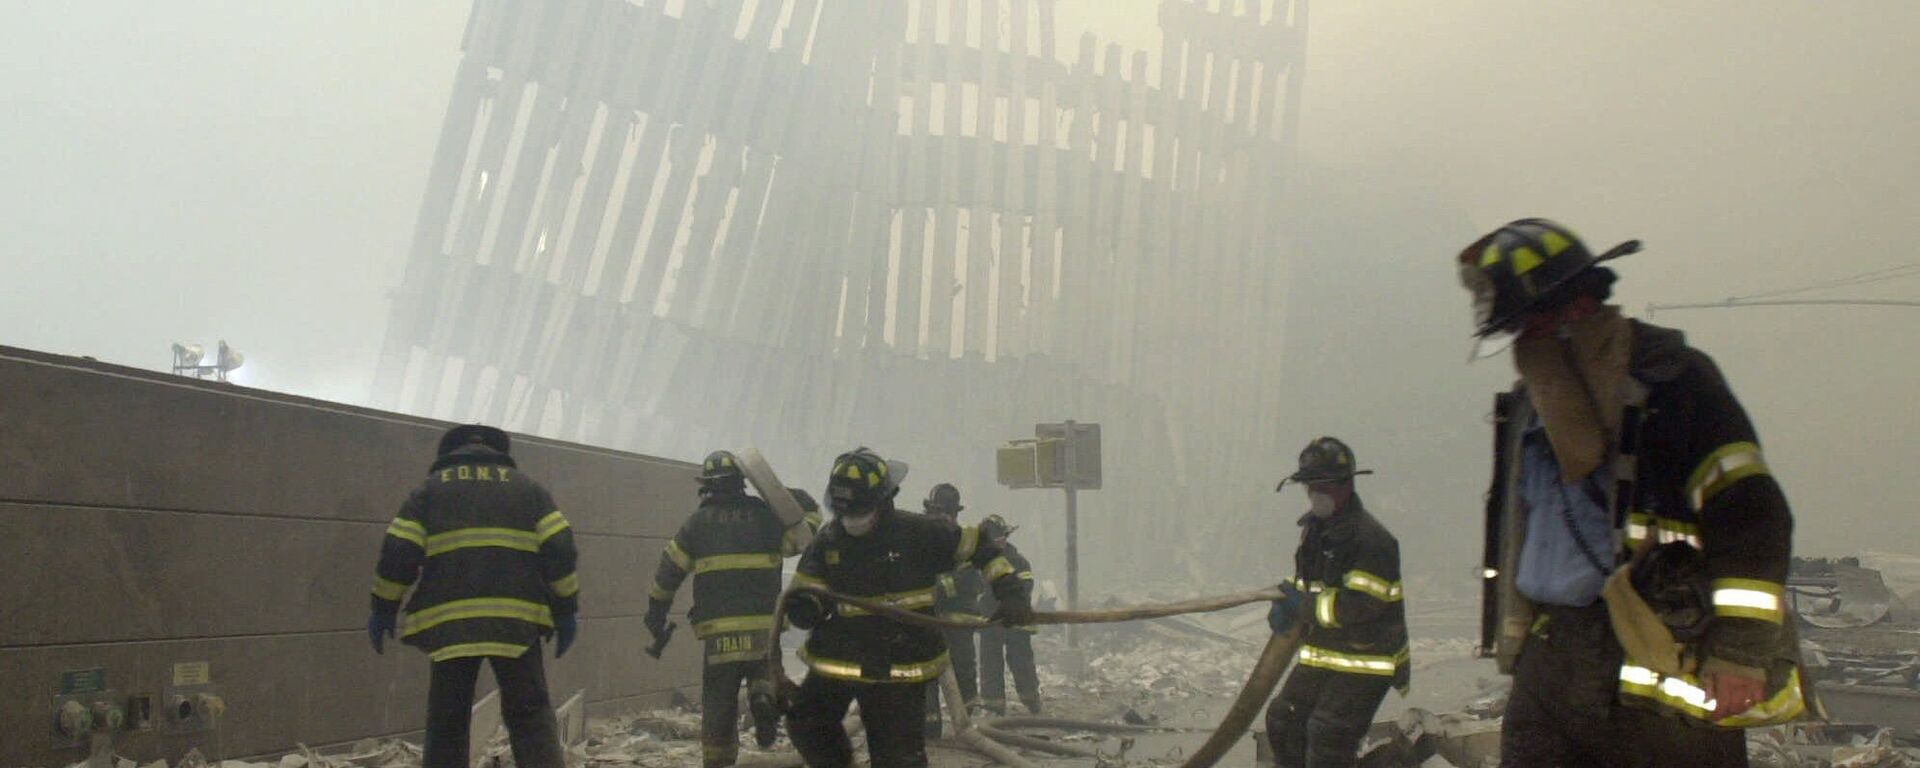 Bomberos de Nueva York trabajando en el sitio de los atentados del 11 de septiembre de 2001 - Sputnik Mundo, 1920, 10.09.2021